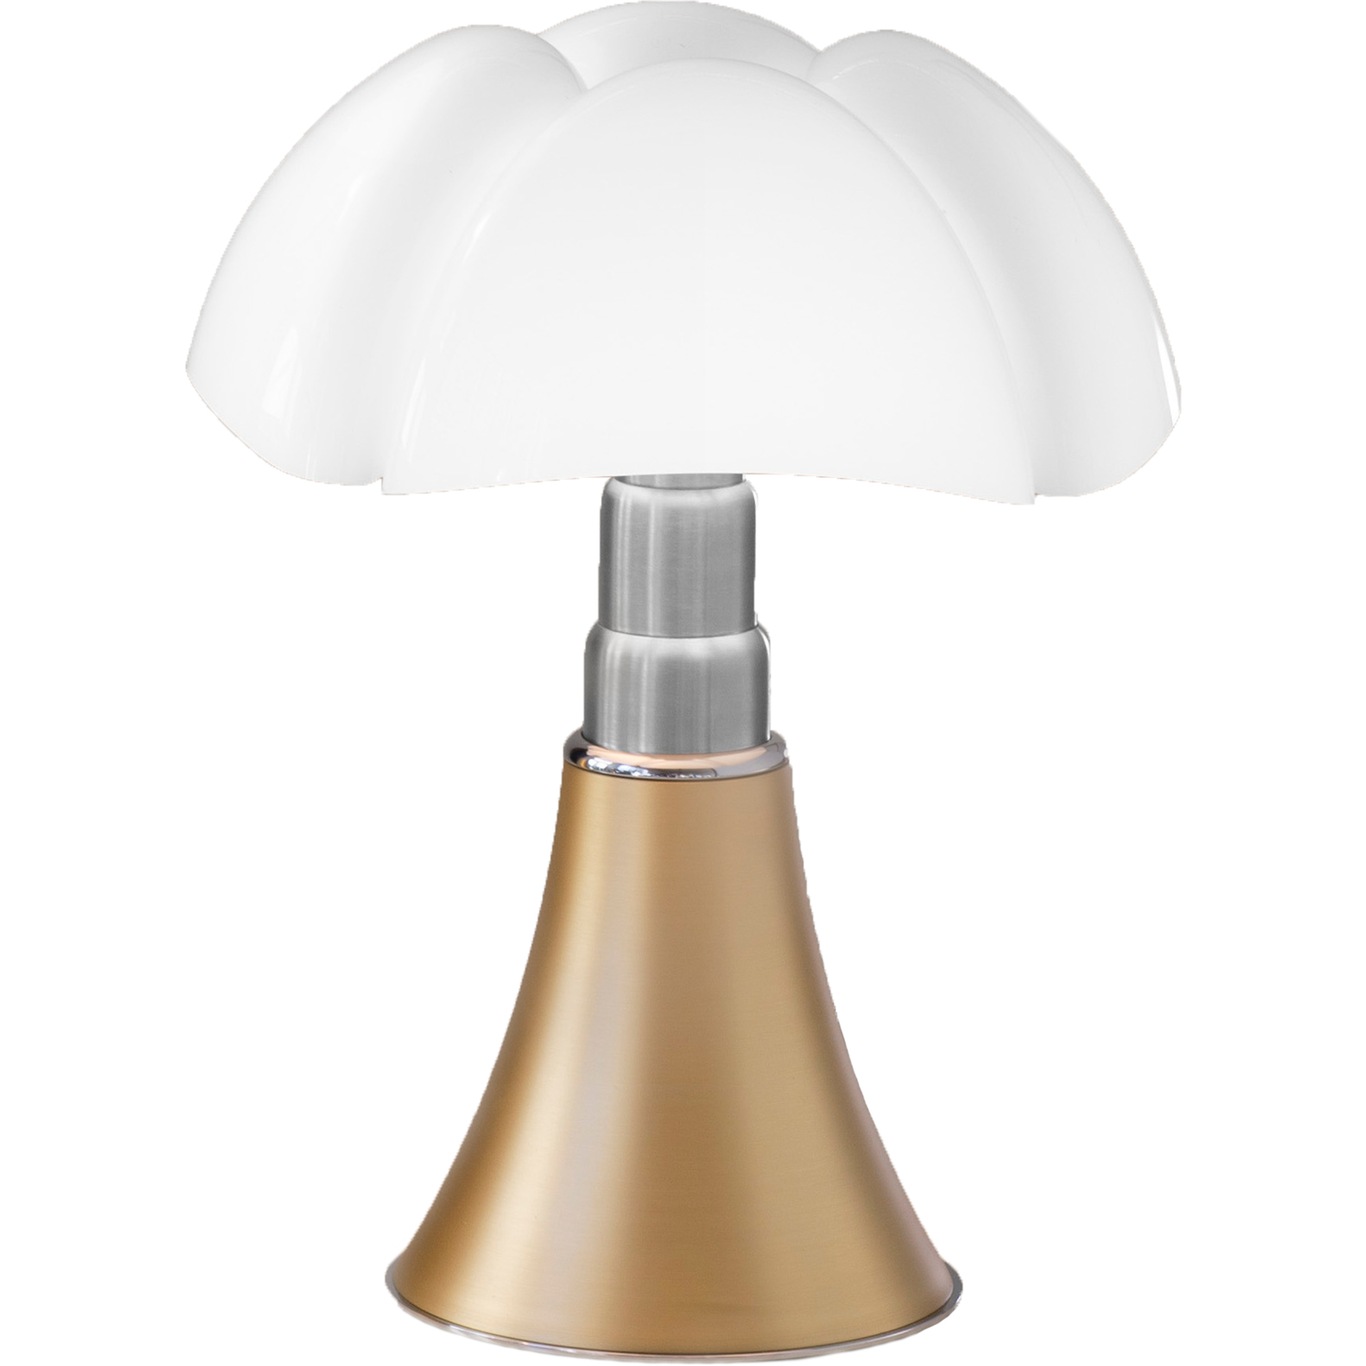 Pipistrello Mini Table Lamp, Satin Brass